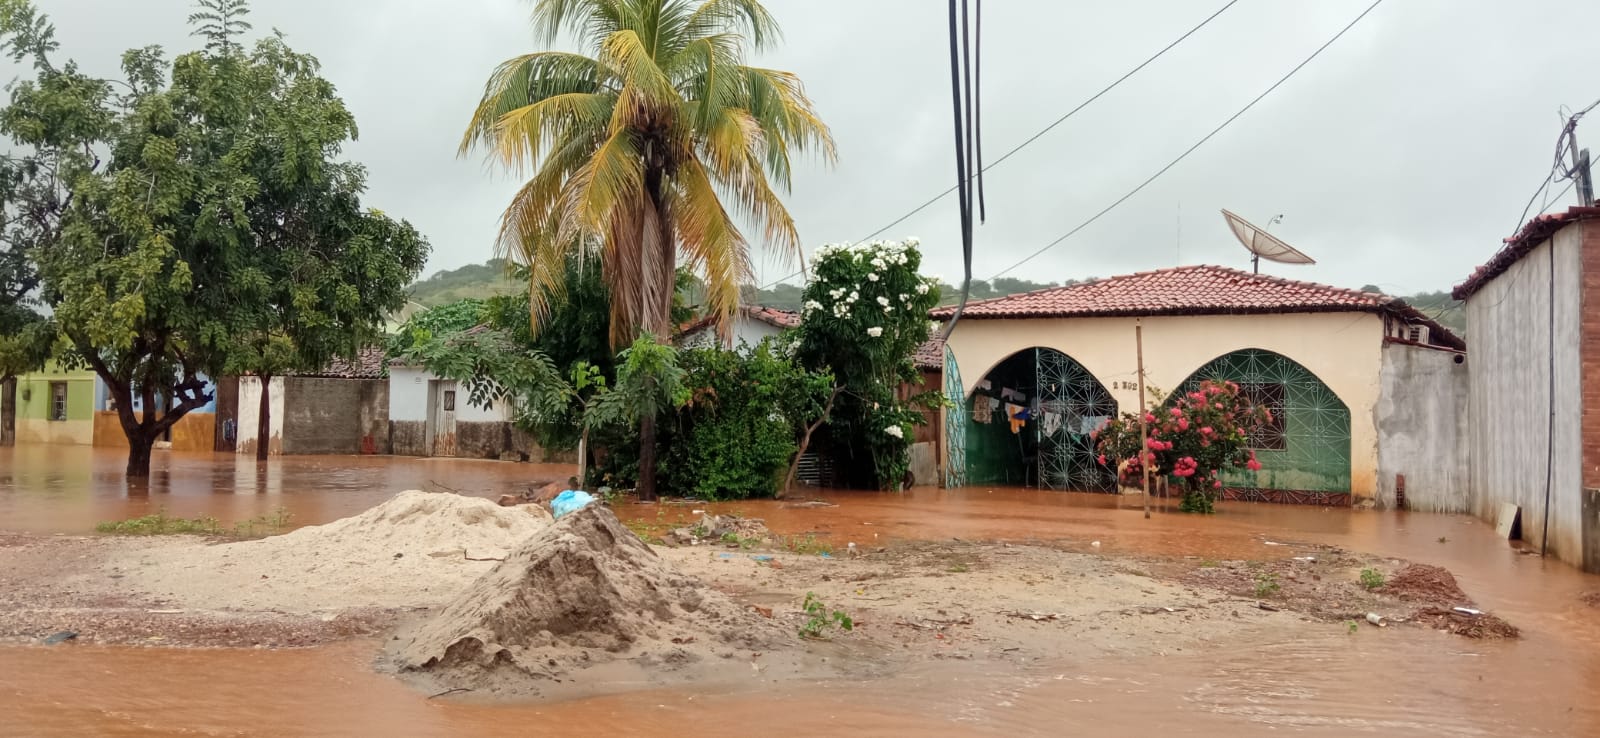 Defesa Civil de Picos intensifica monitoramento de áreas afetadas pelas chuvas